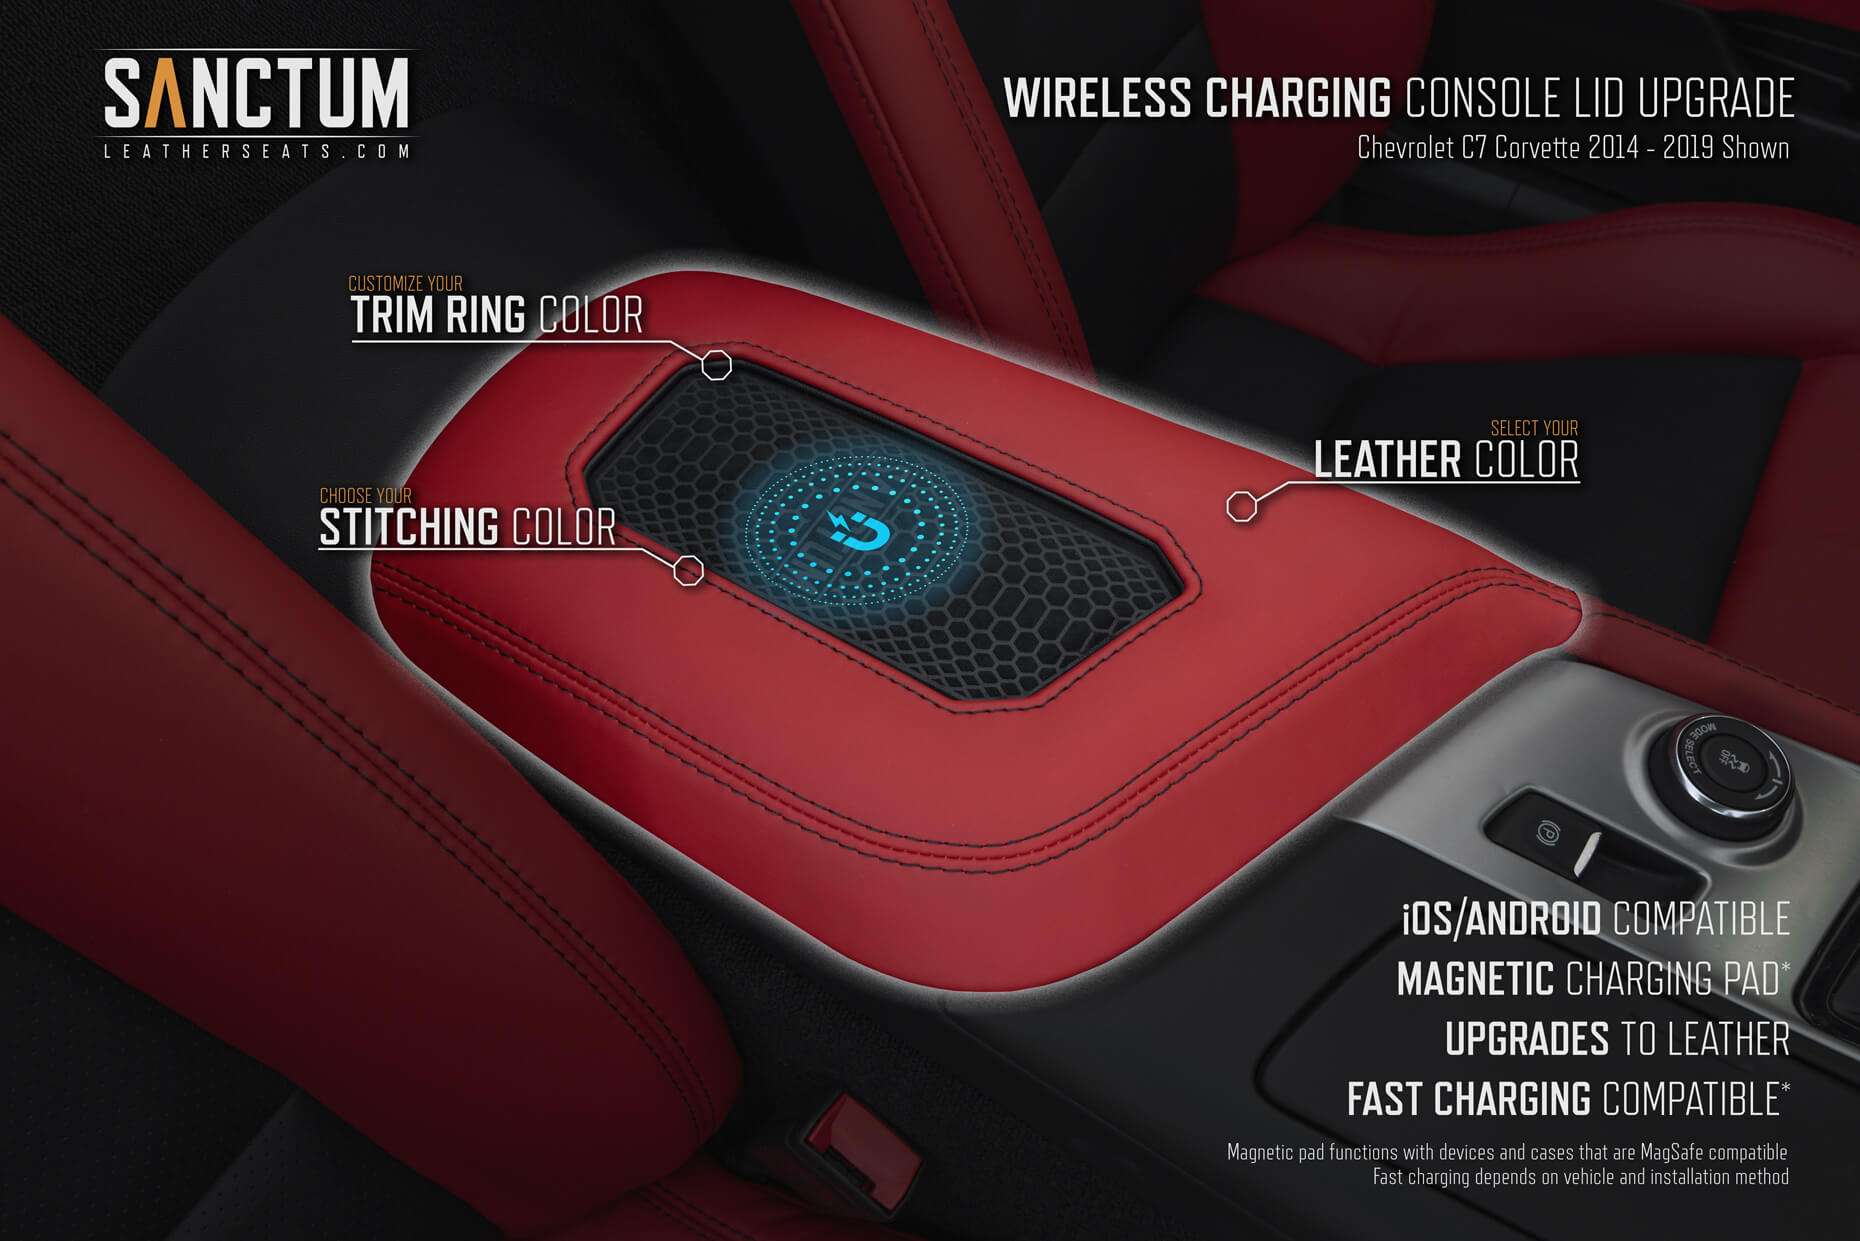 Chevrolet C7 Corvette 2014-2019 Sanctum Wireless Console Features